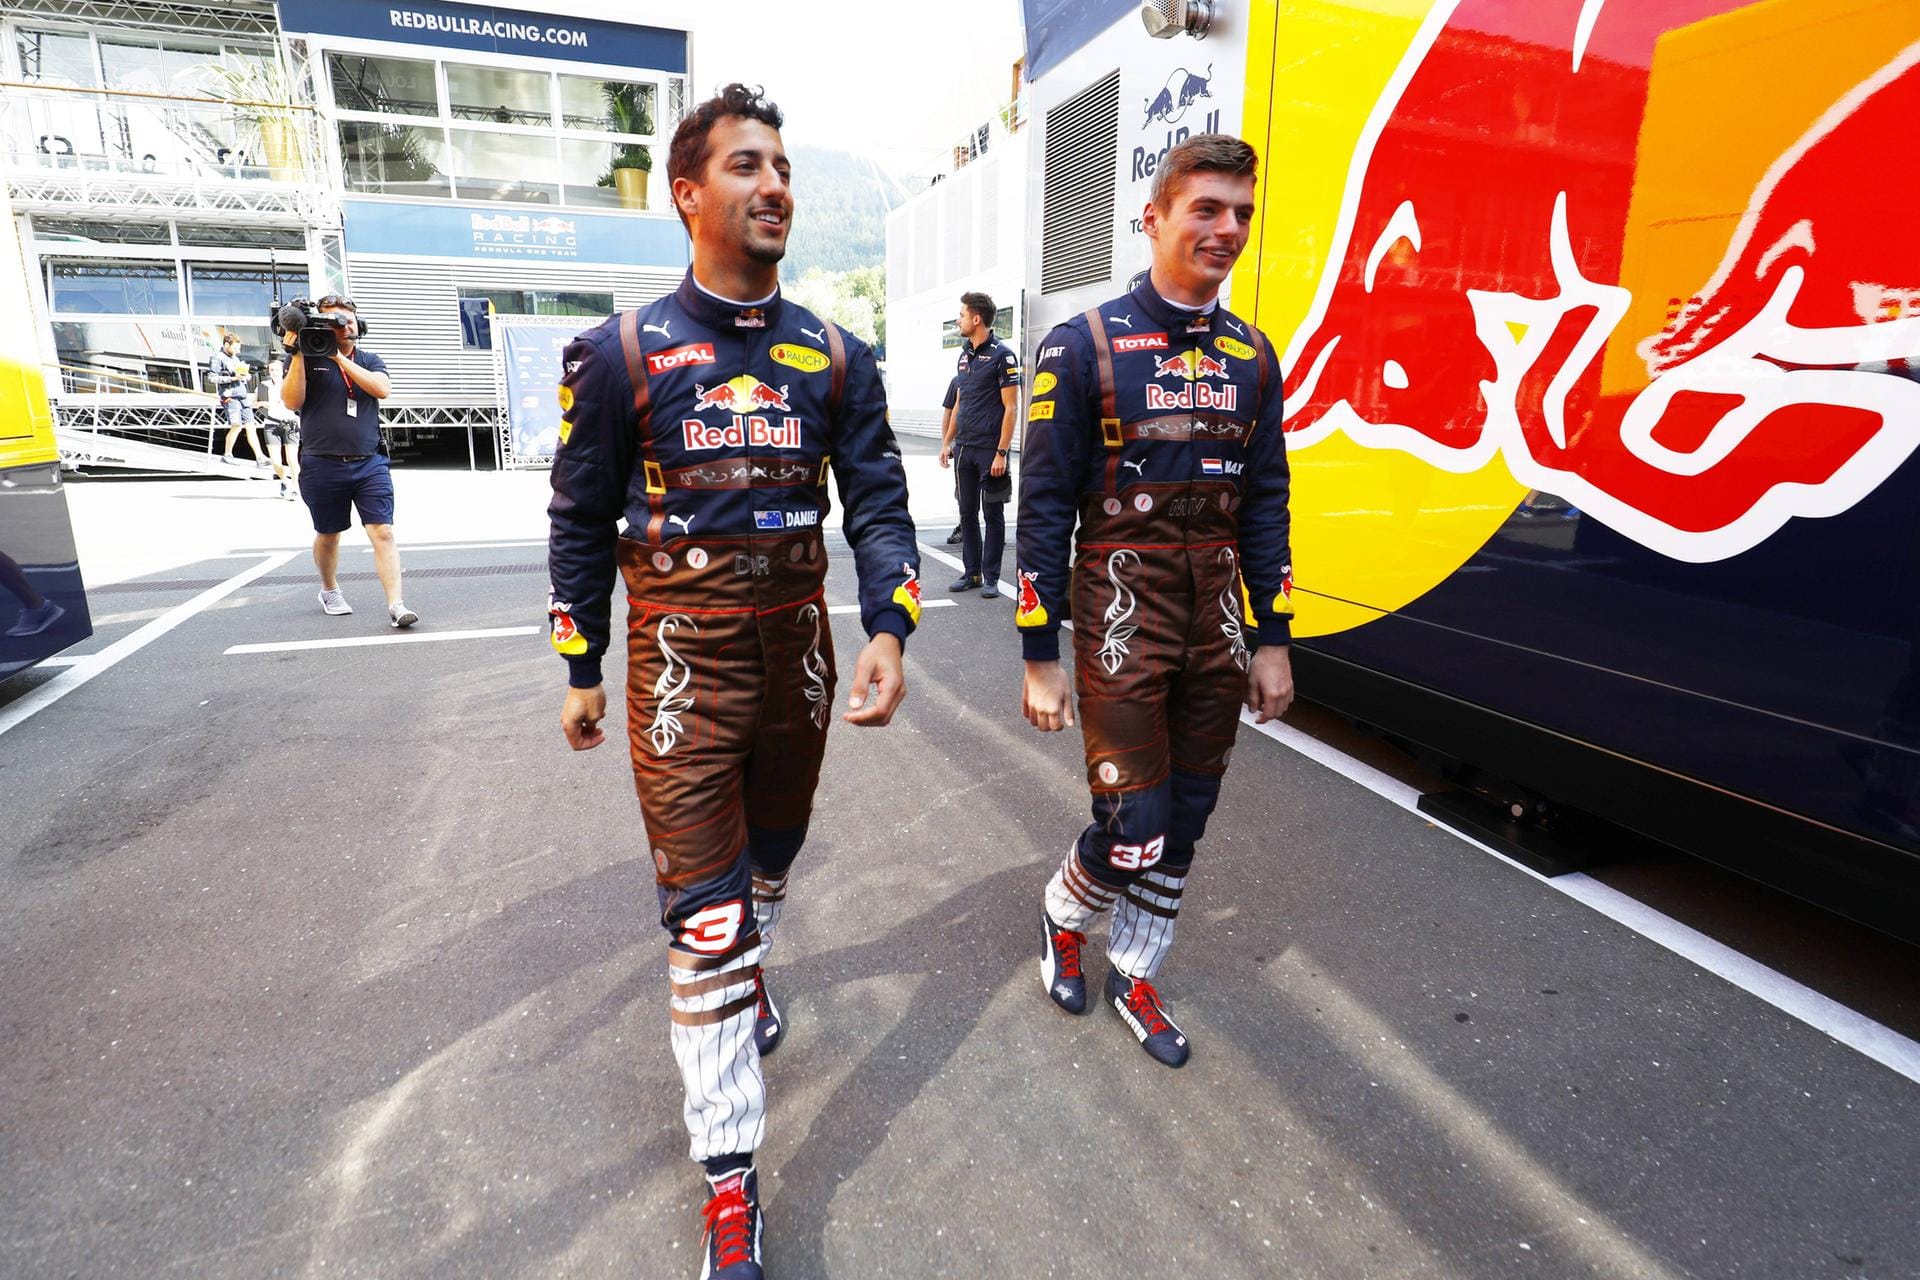 Trachtenlook beim Heimspiel: Die Red-Bull-Piloten Daniel Ricciardo (links) und Max Verstappen präsentieren sich in Lederhosen.